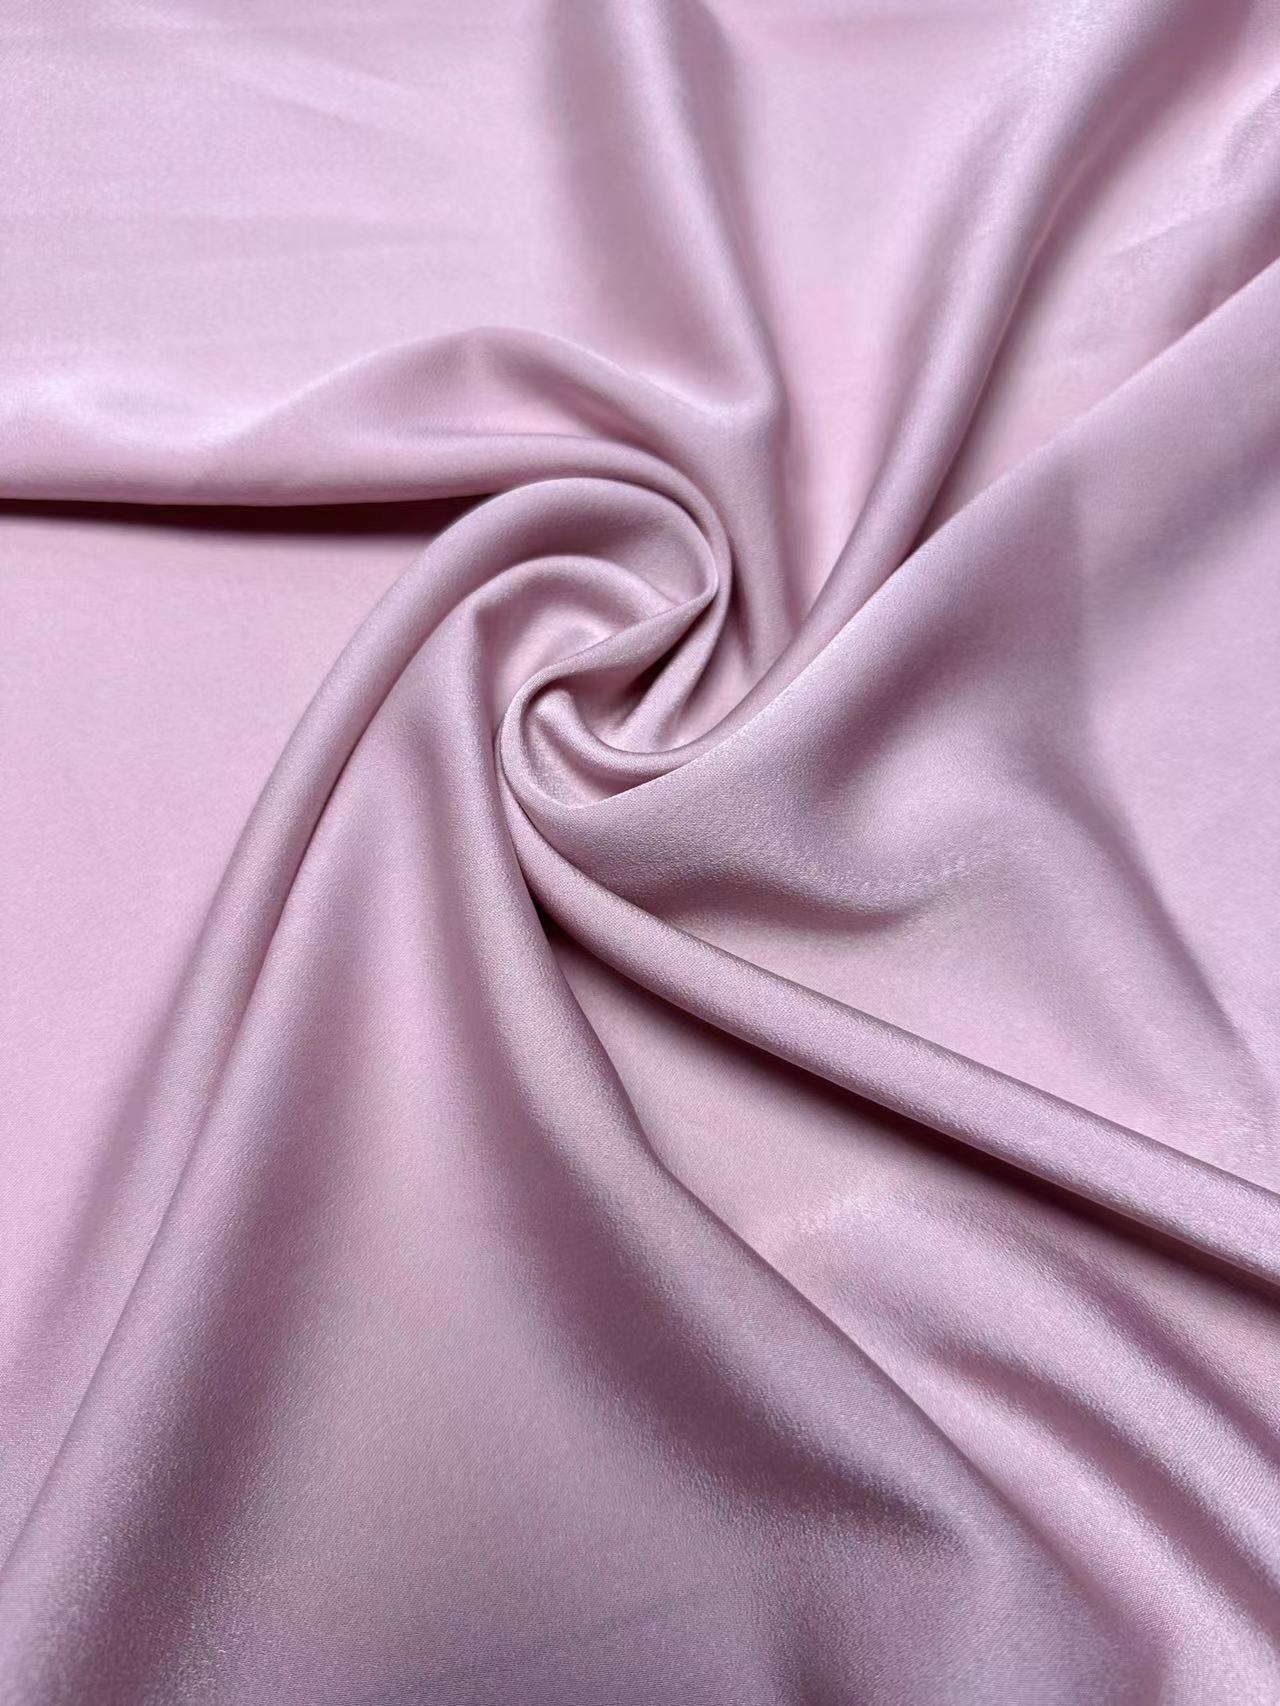 Acetate Velvet Satin Dress Dress Pajamas Artificial Silk Acetate Satin Fabric Bride Veil